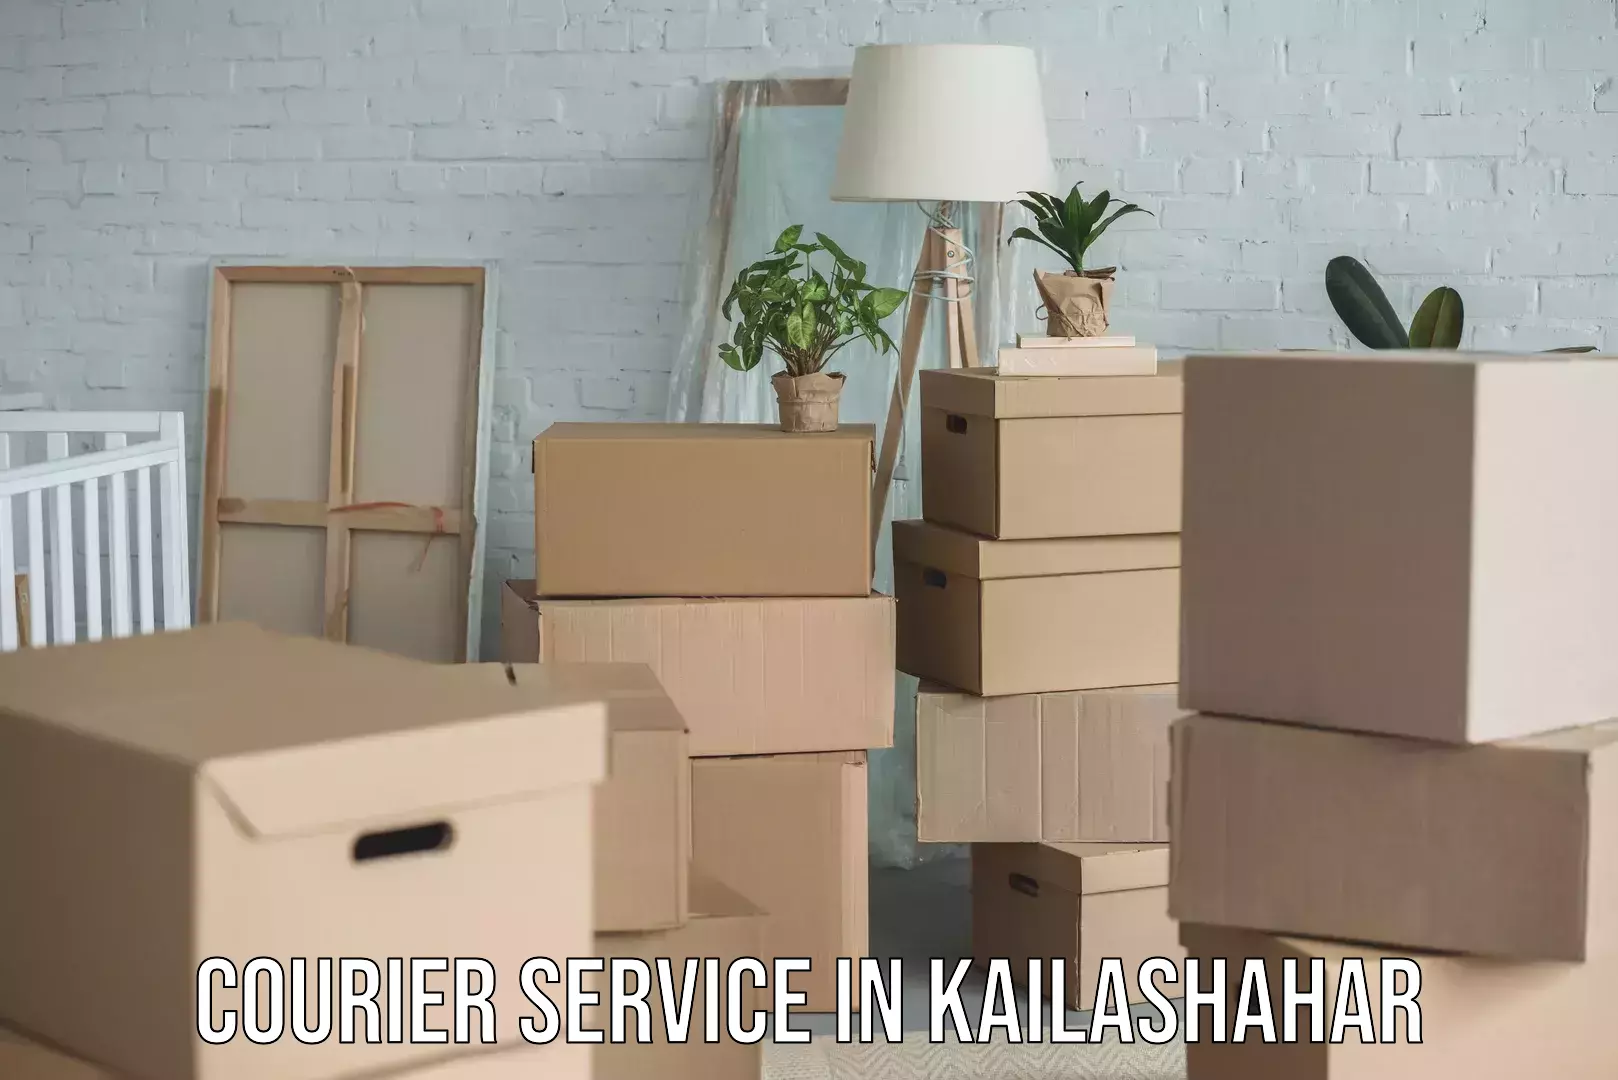 Efficient cargo handling in Kailashahar